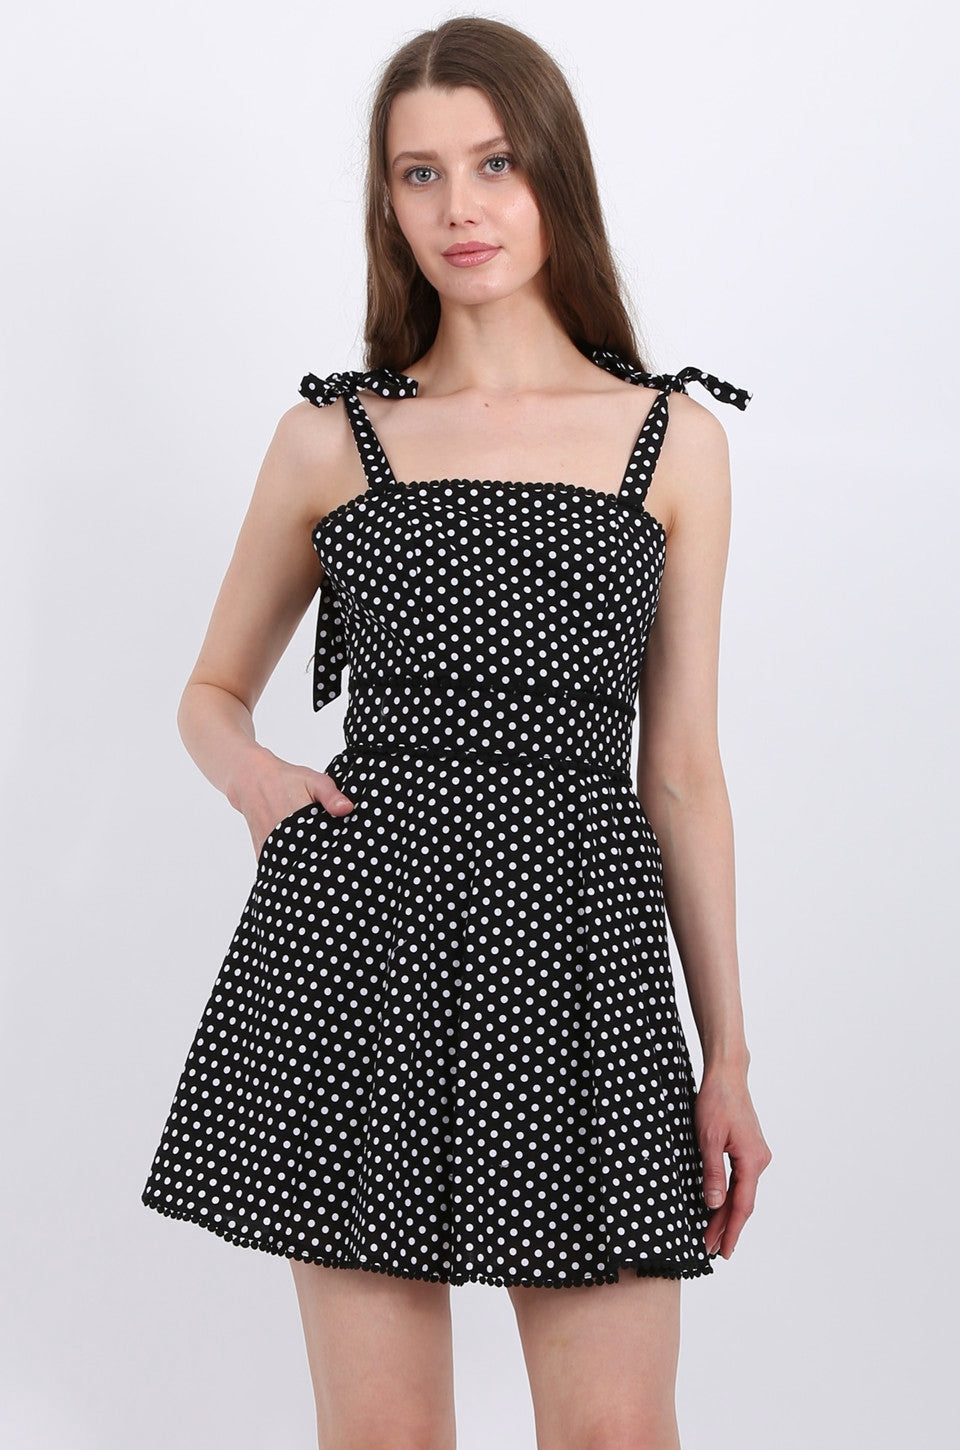 MISS PINKI Alyssa Polka Dots Dress In Black